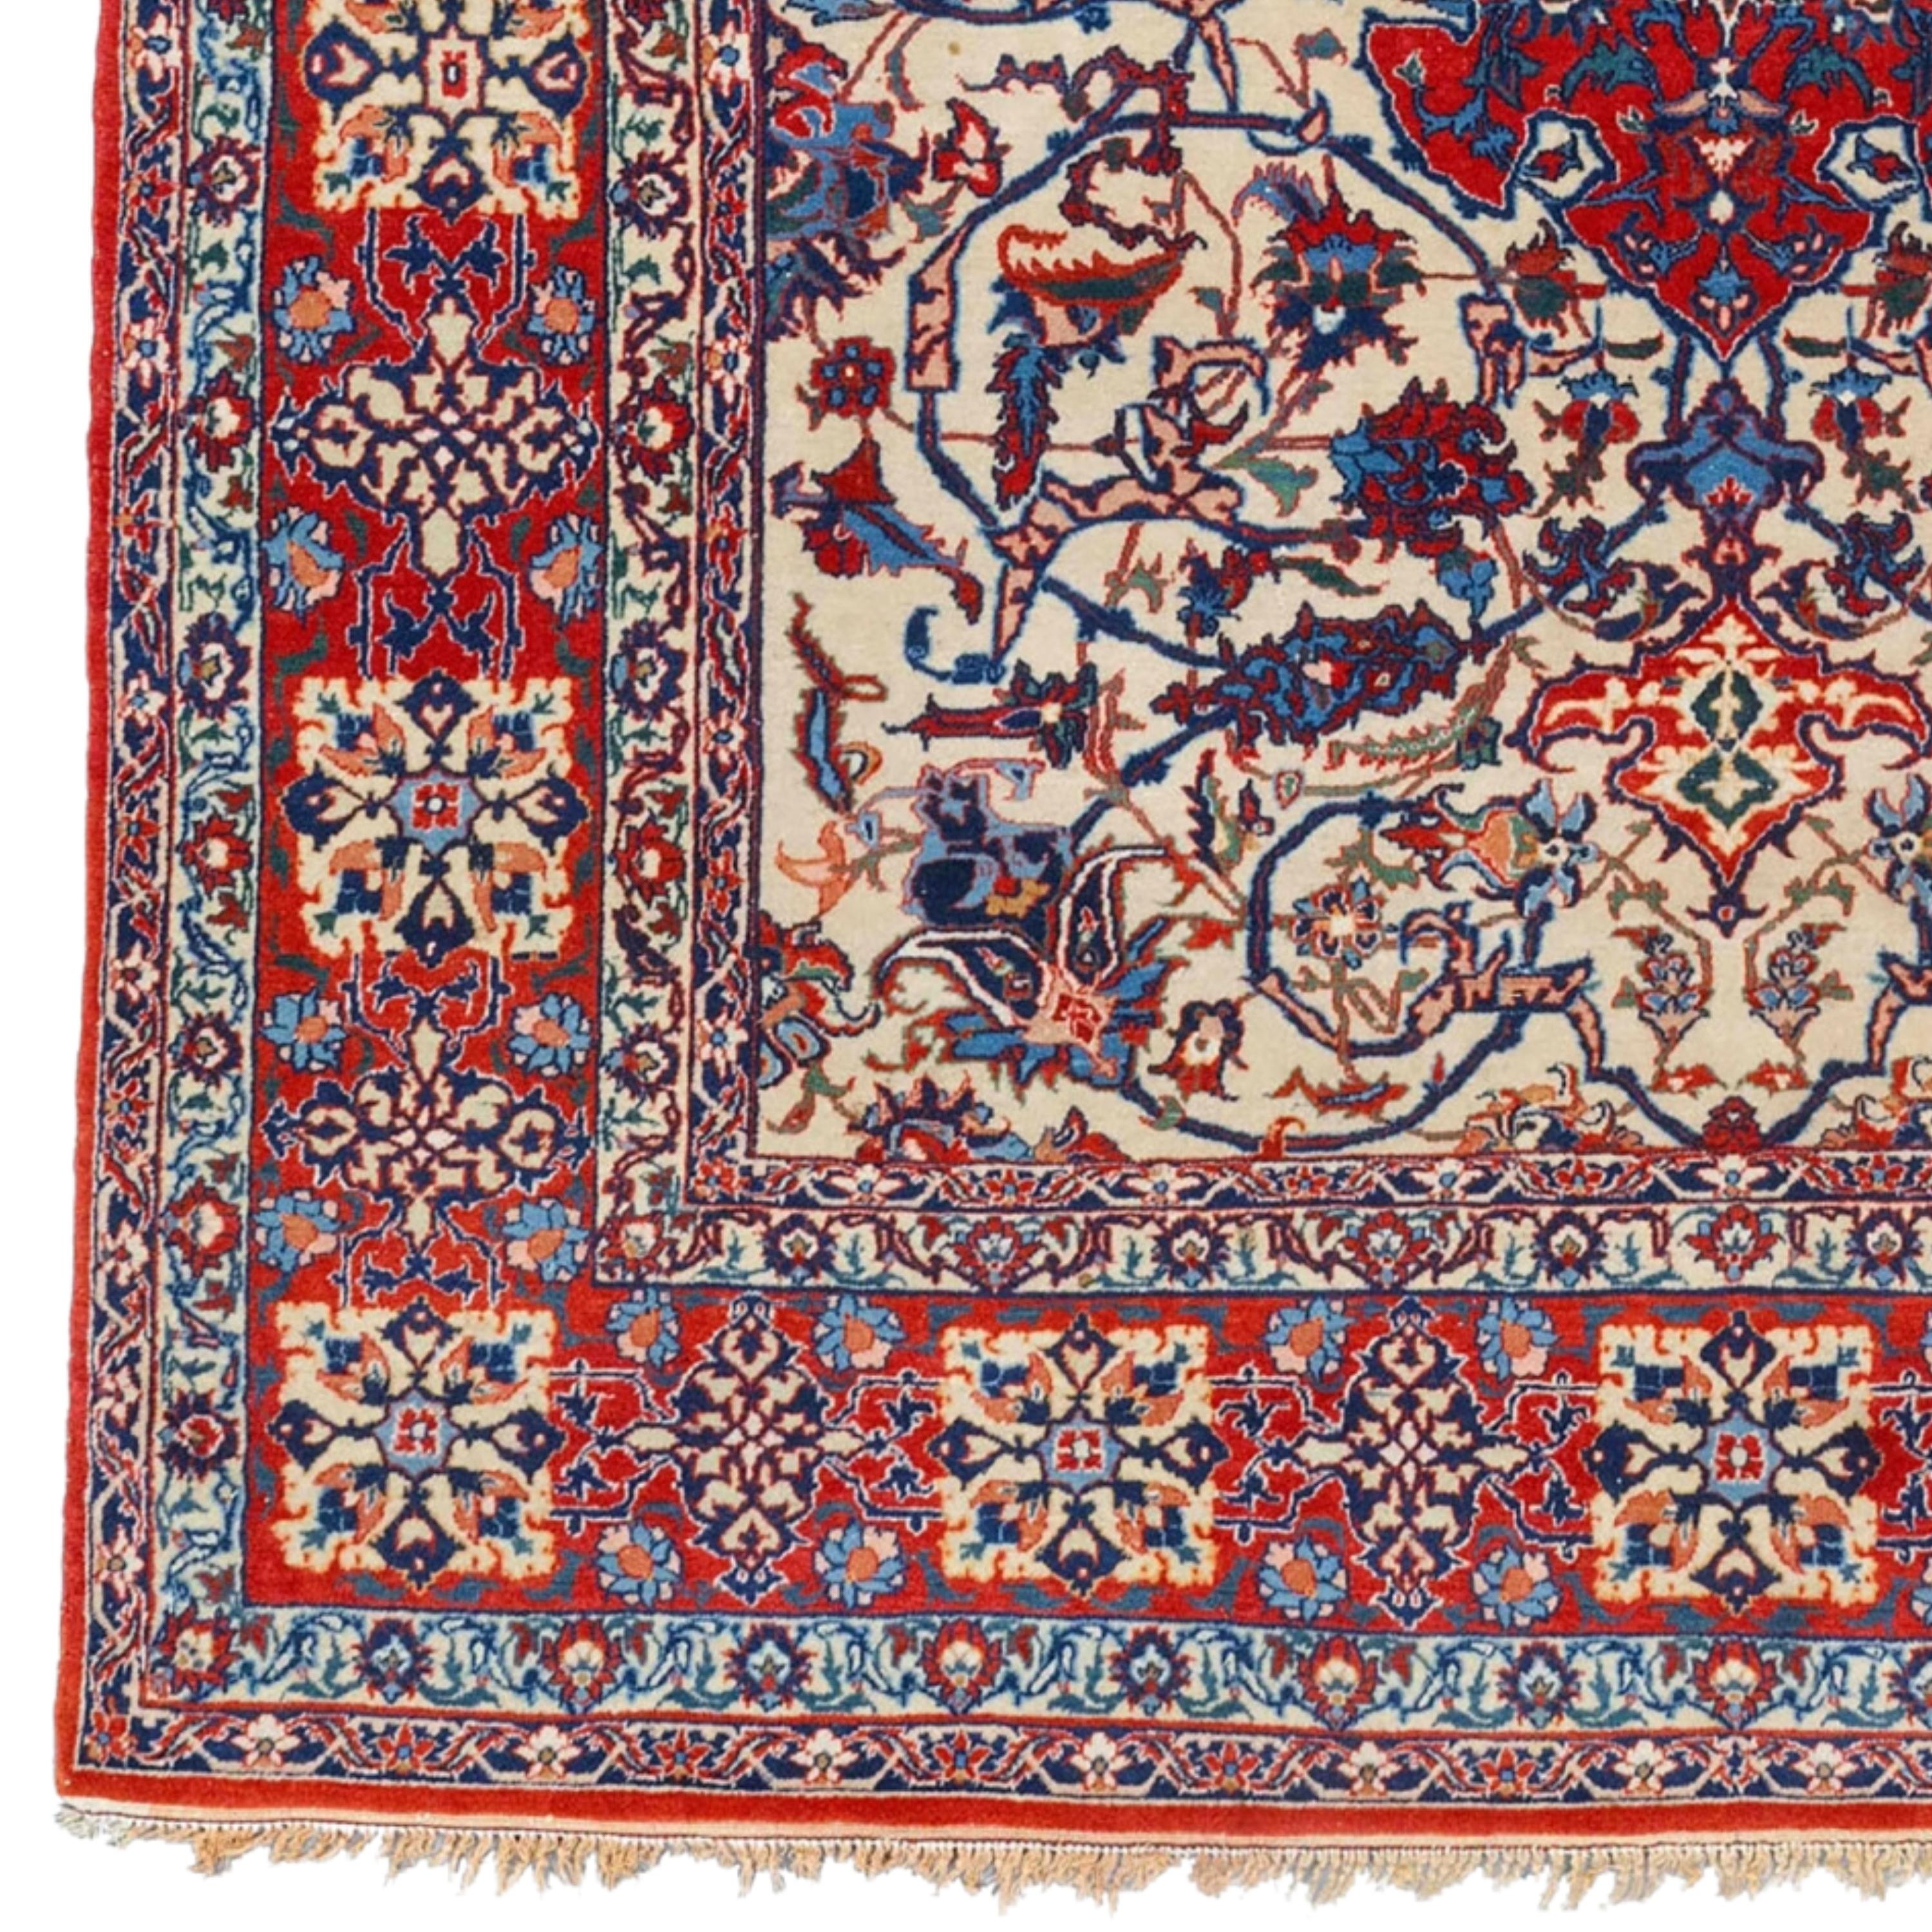 Gebetsteppich aus dem späten 19. Jahrhundert aus Isfahan
Größe: 146x212 cm

Dieser beeindruckende Teppich aus dem späten 19. Jahrhundert aus Isfahan ist ein Meisterwerk, das die elegante und anspruchsvolle Handwerkskunst einer historischen Epoche